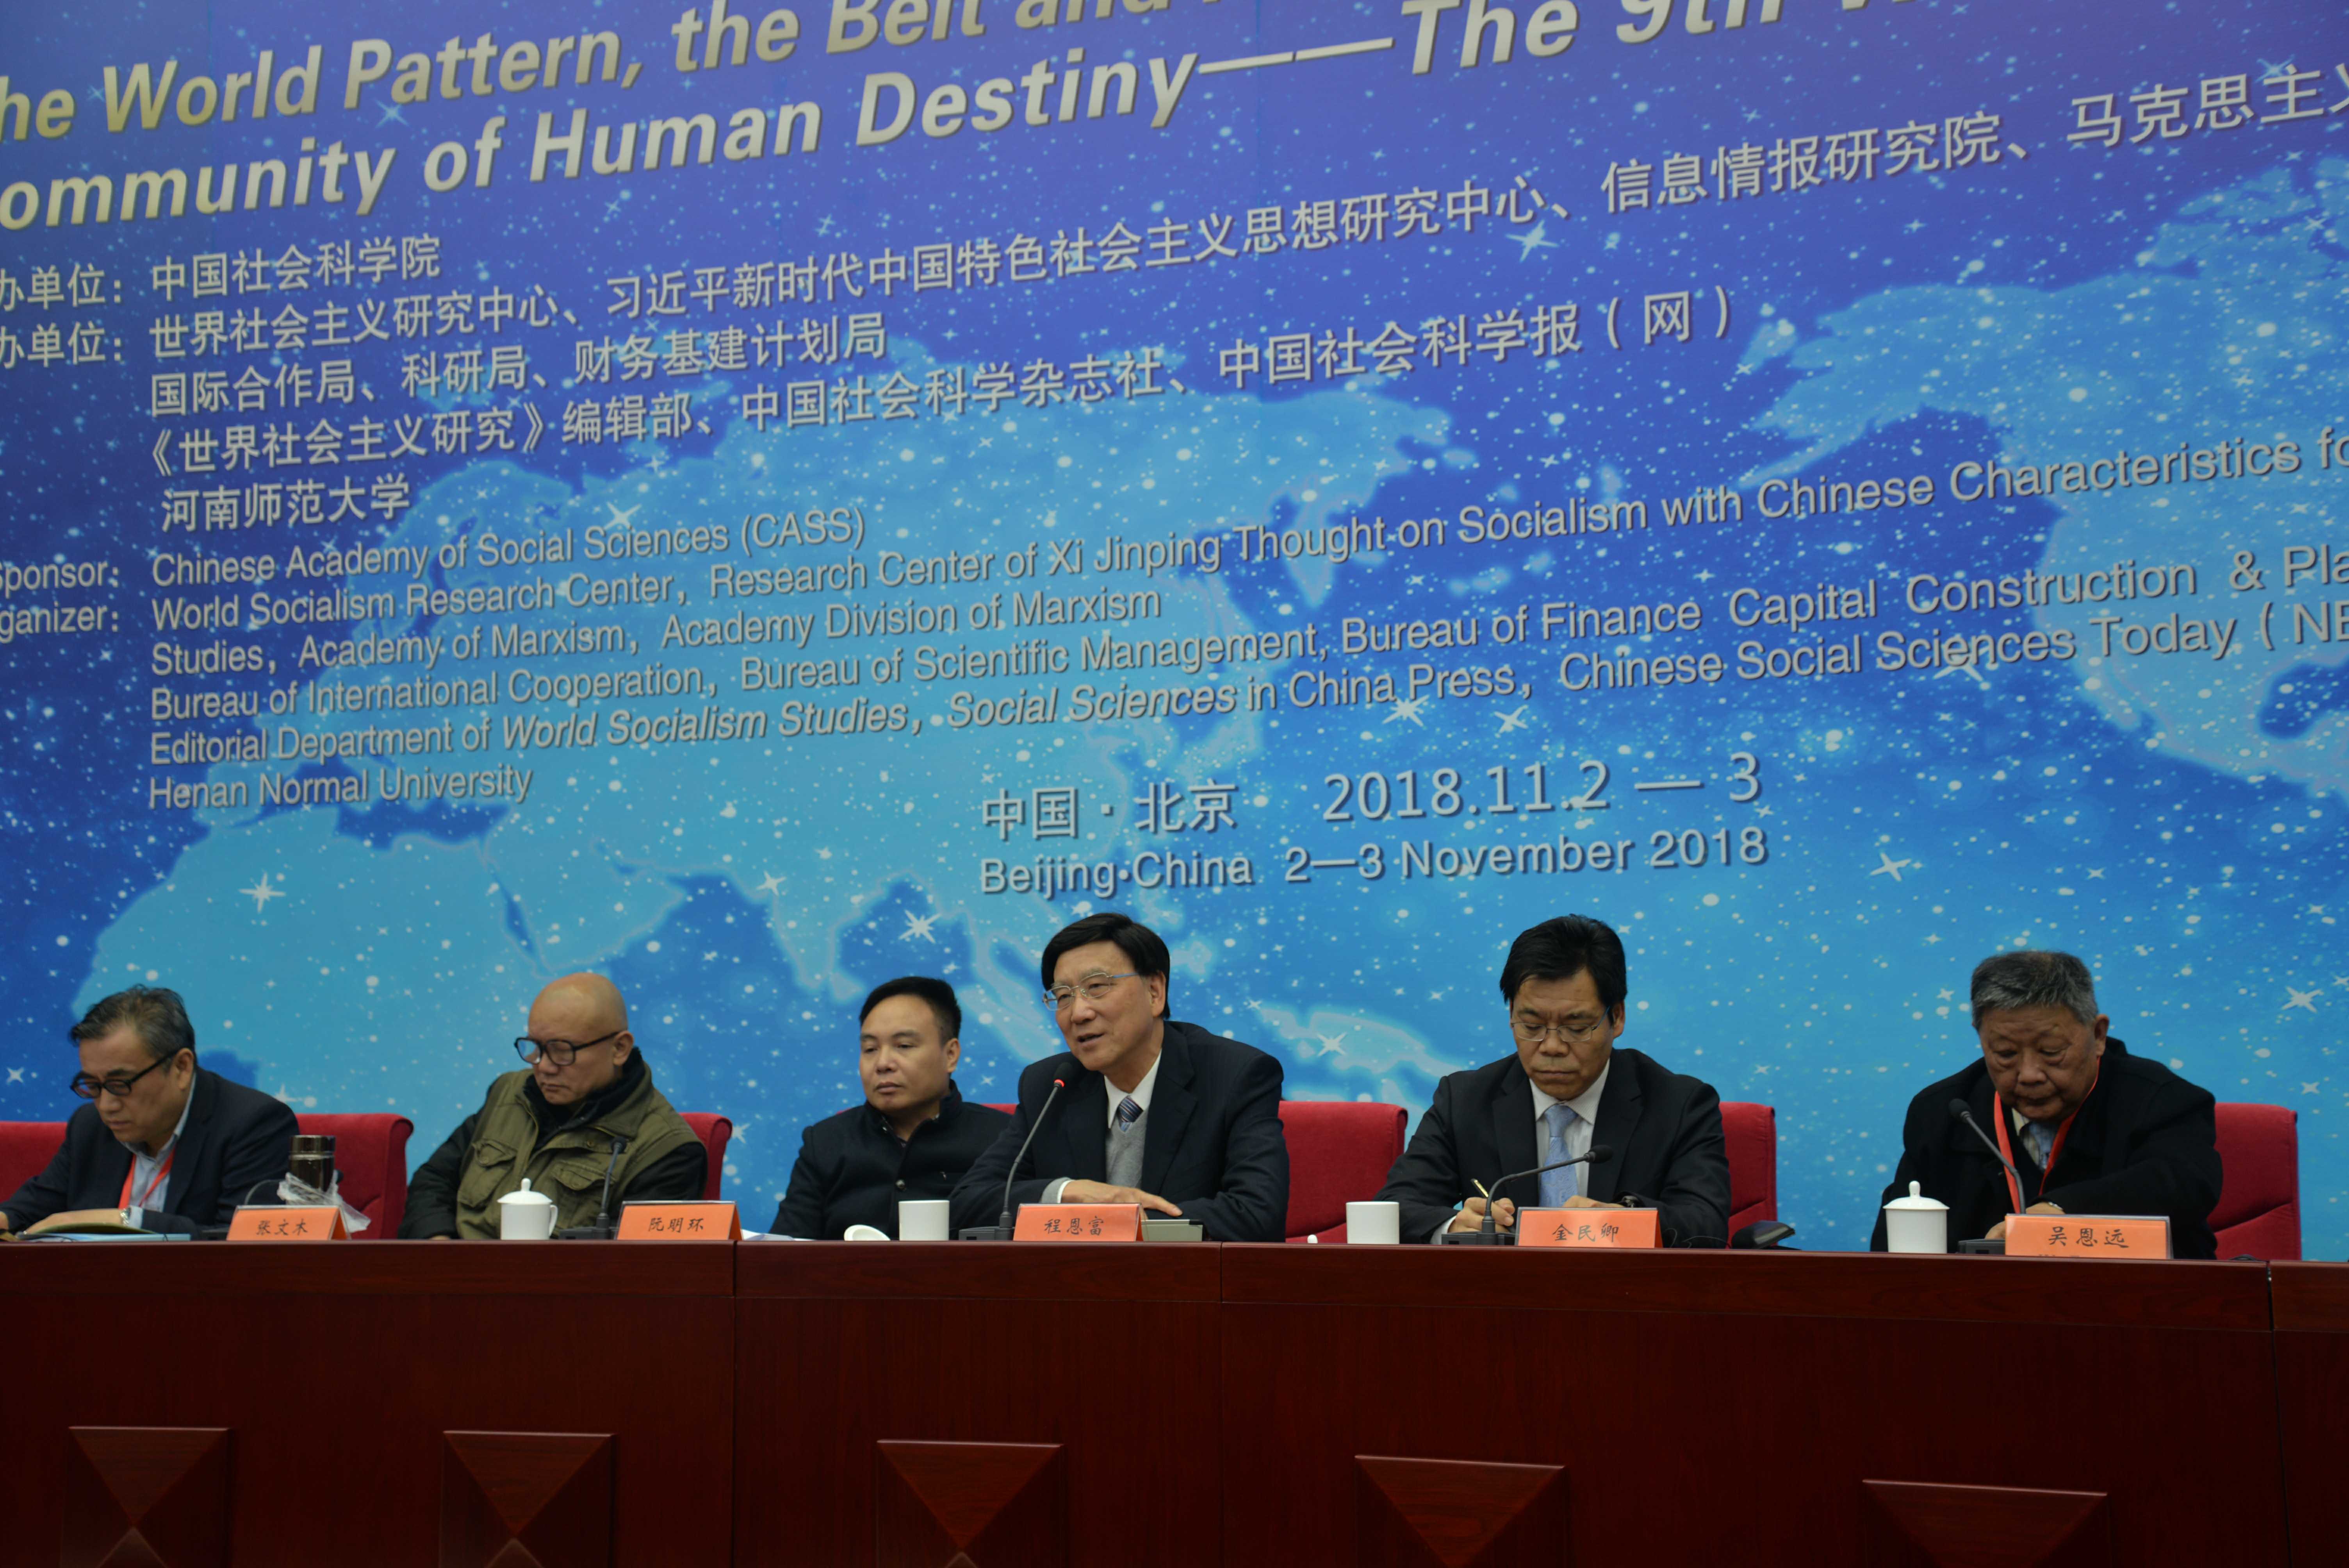 王伟光、程恩富等学者在第九届世界社会主义论坛的发言摘录